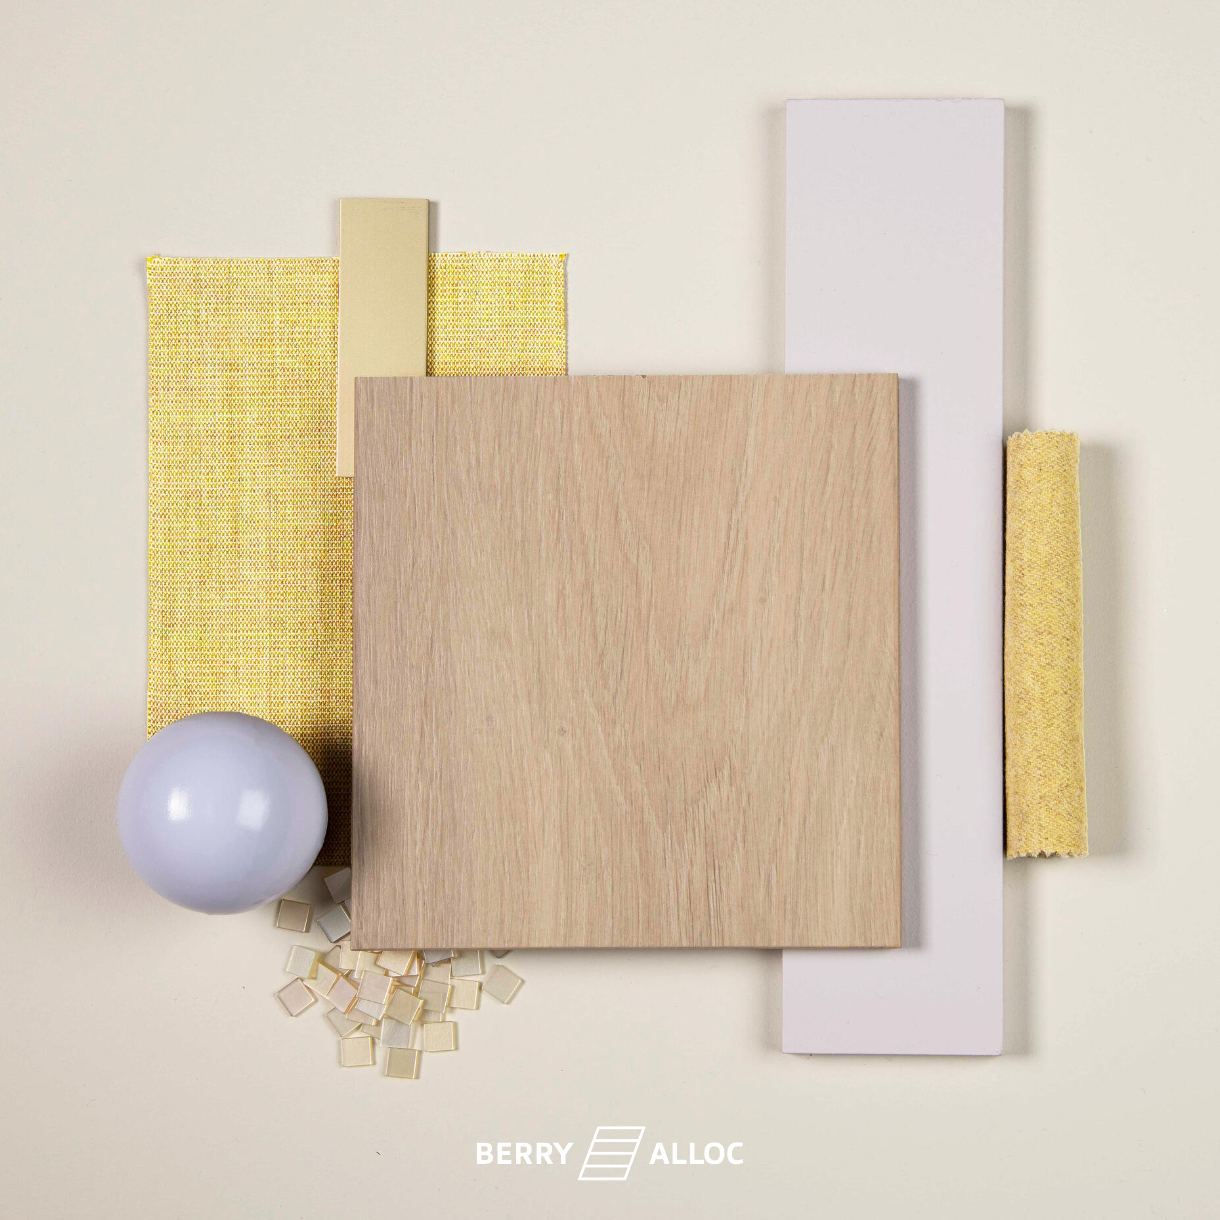 Moodboard, une planche d'inspiration proposée par BerryAlloc fabricant de parquets et sols bois stratifiés. Ici dans un chêne clair associé à un jaune mimosa et un parme presque blanc.